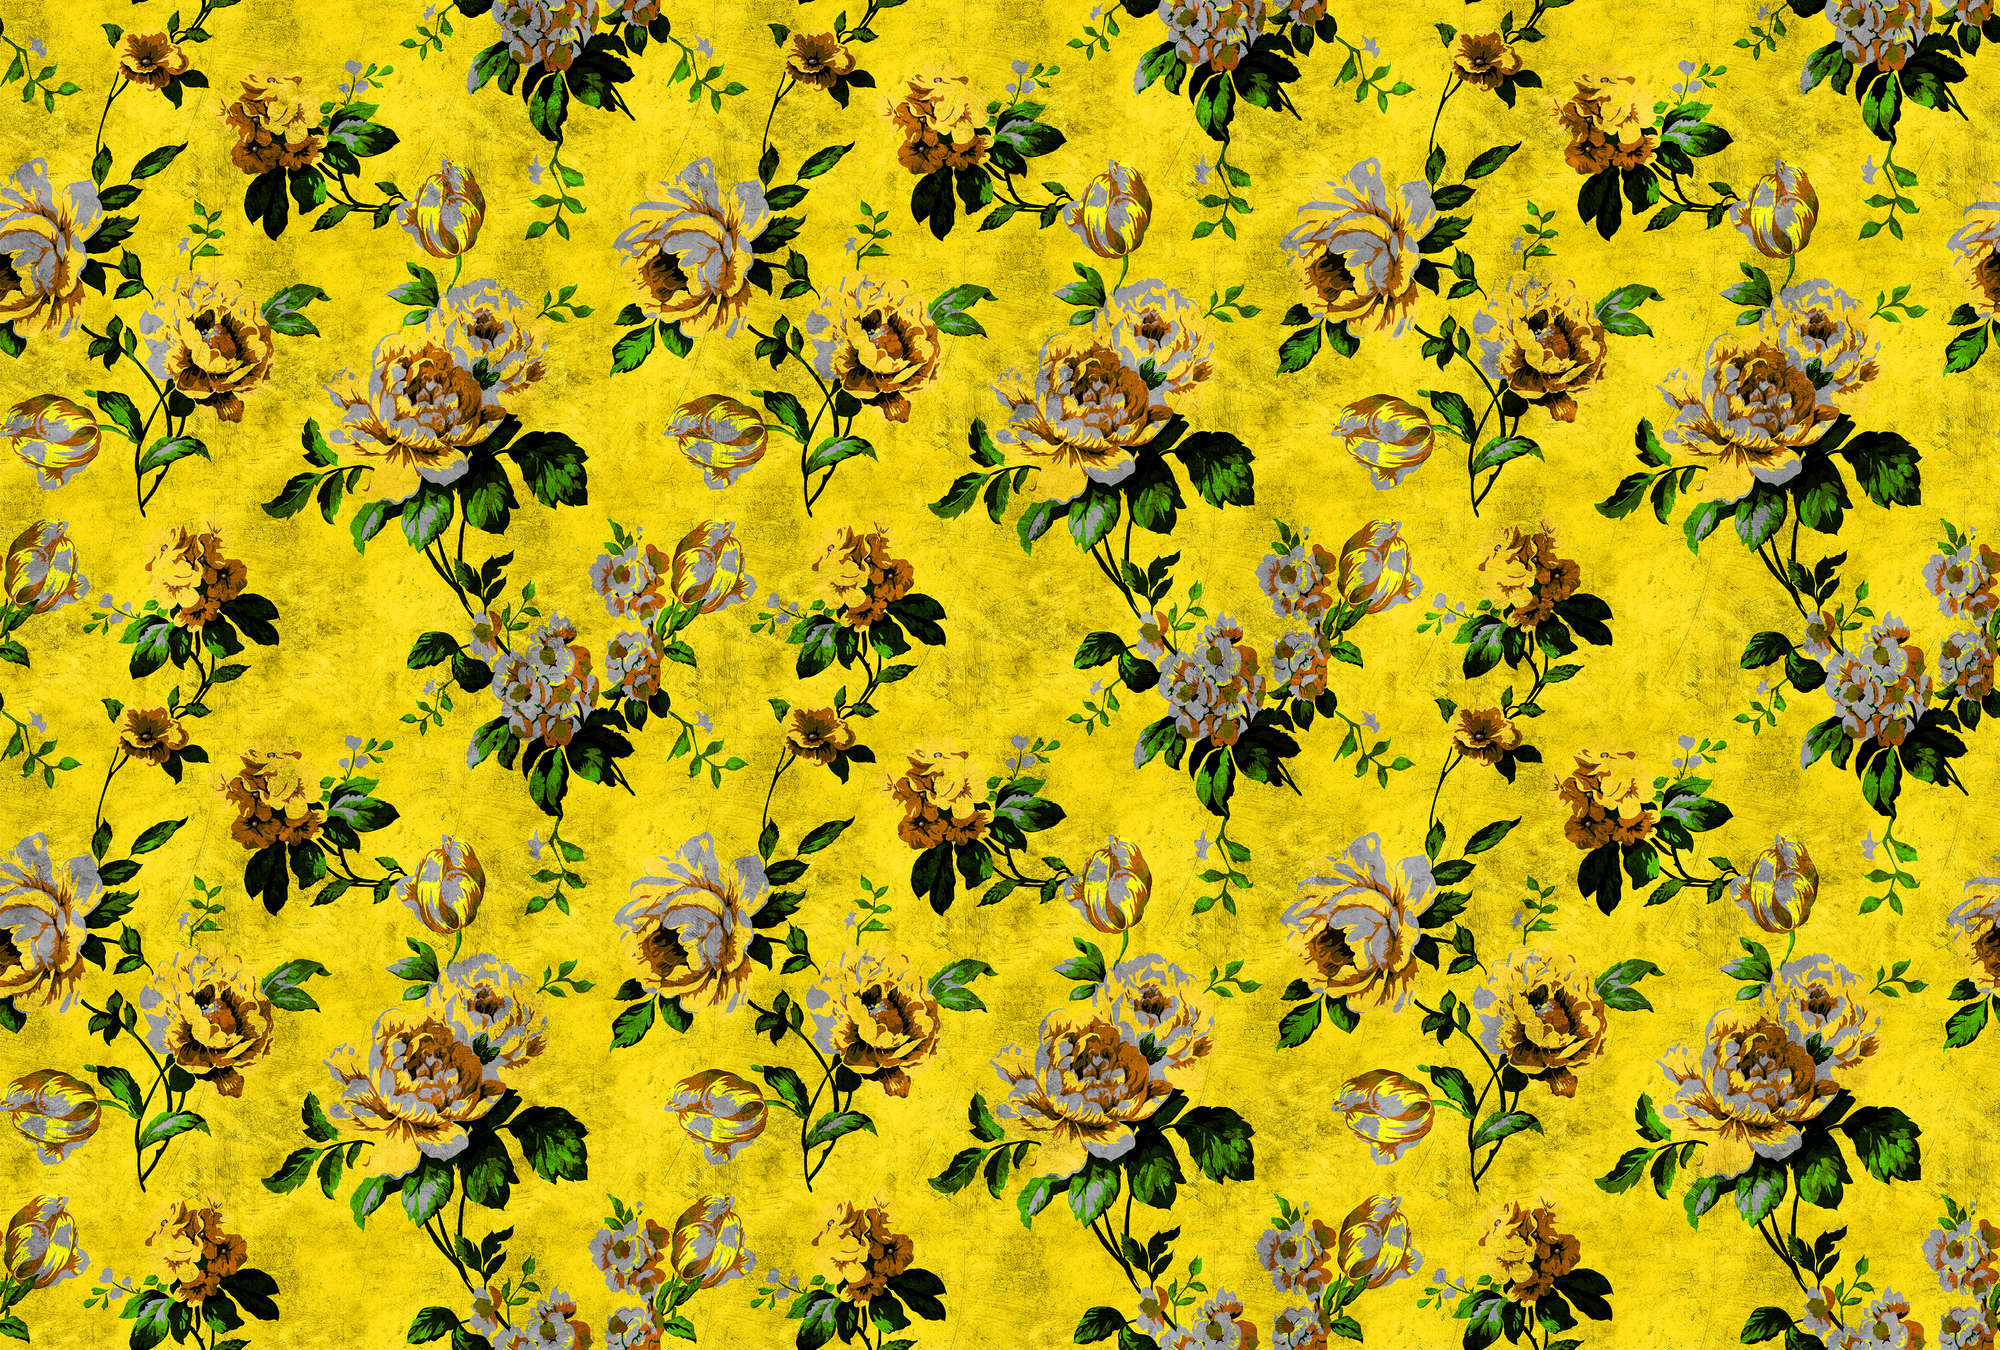             Rosas silvestres 5 - Papel pintado fotográfico Rosas en estructura rayada en aspecto retro, Amarillo - Amarillo, Verde | Vellón liso mate
        